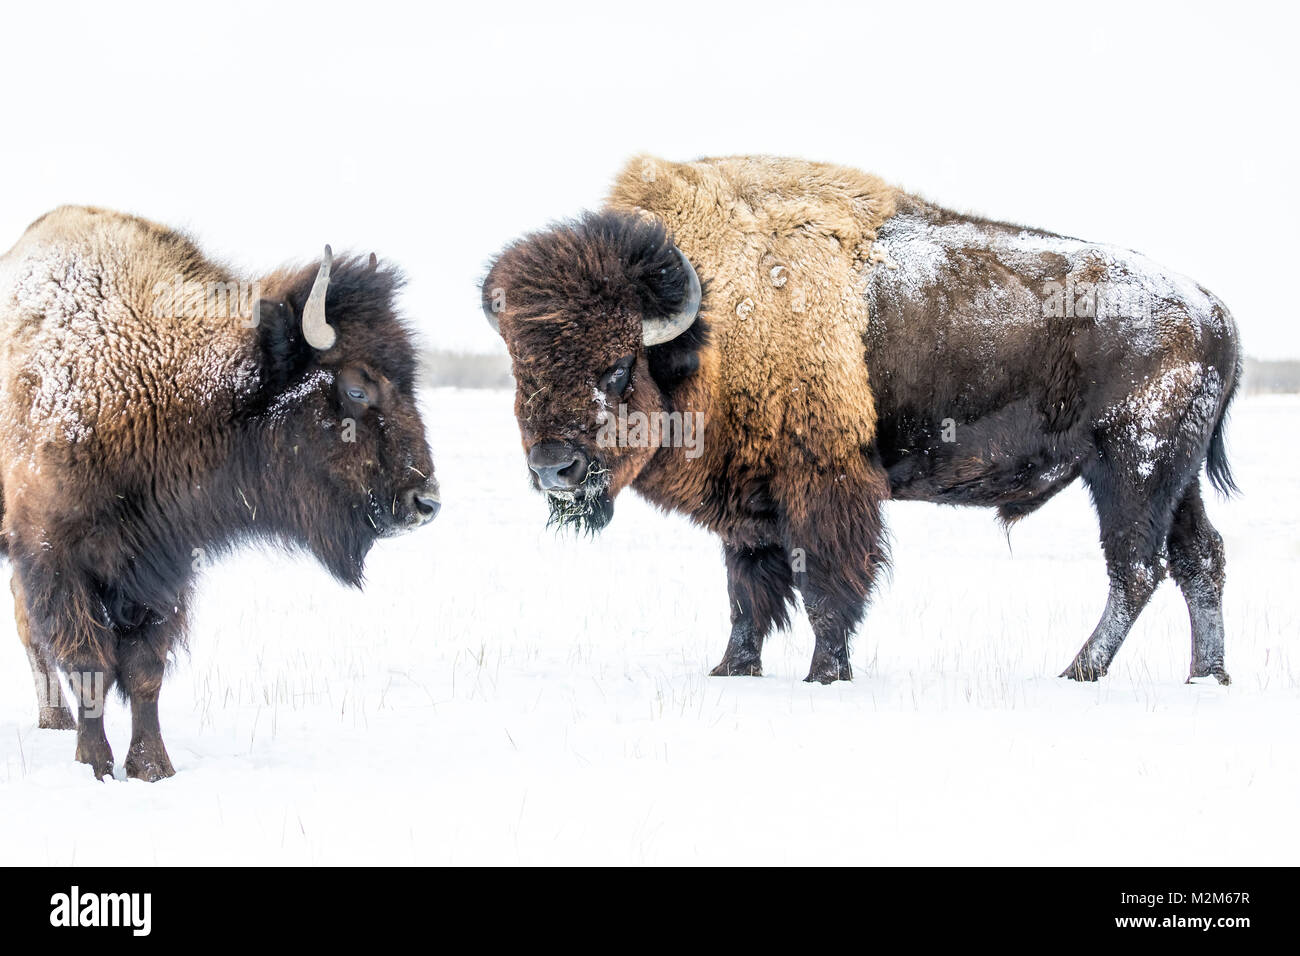 Llanuras Bison, Bull, o Buffalo (Bison bison bison) en invierno, Manitoba, Canadá. Foto de stock